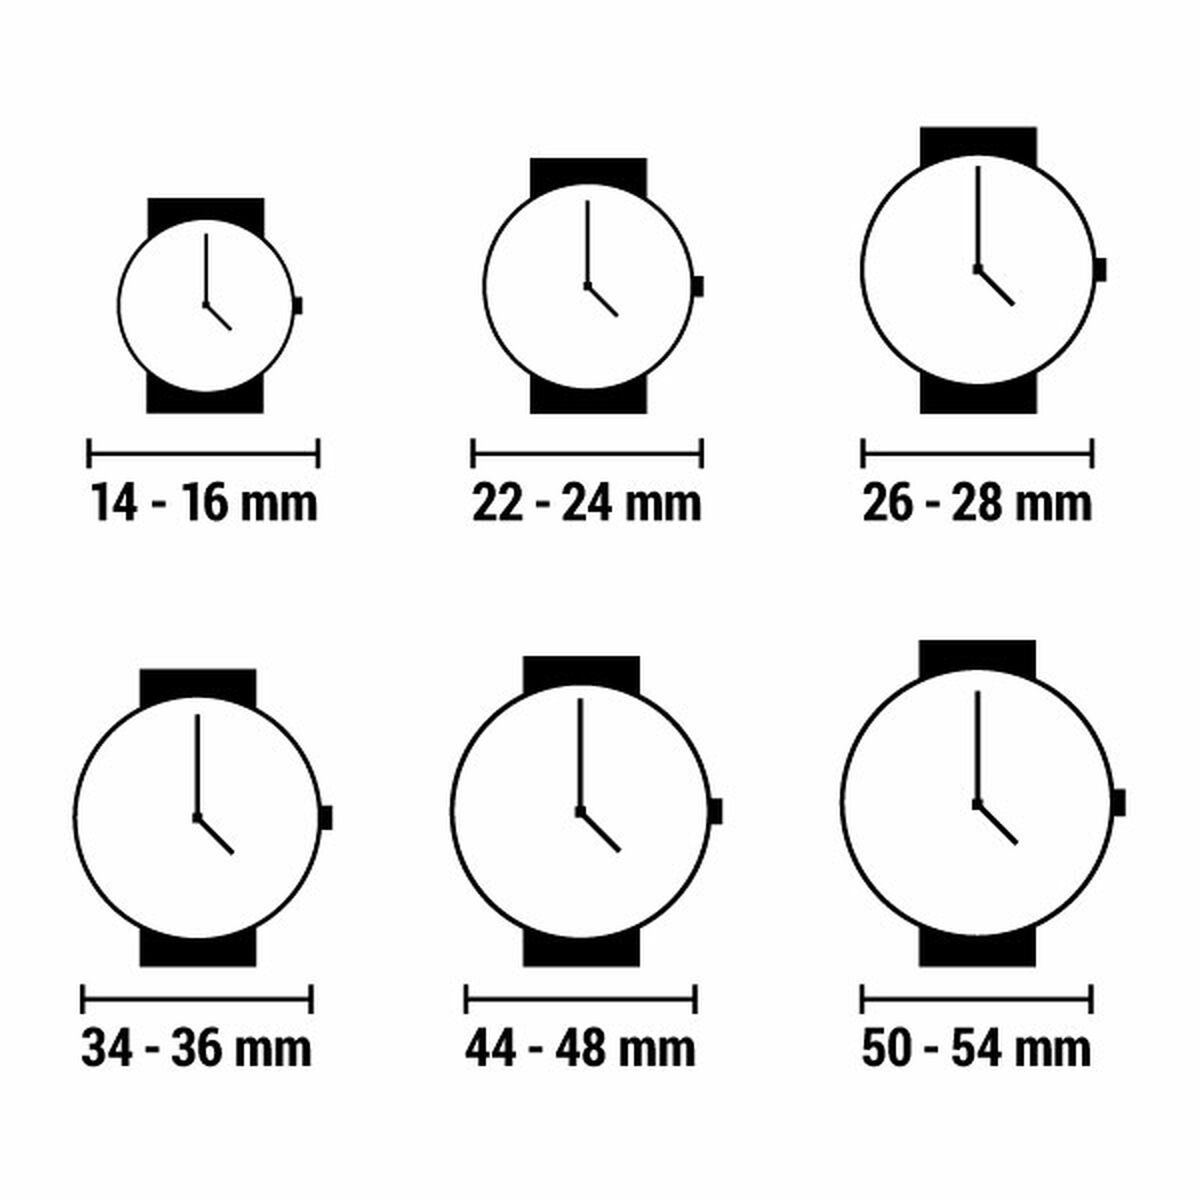 Horloge Dames Guess GW0033L2 (Ø 36 mm)